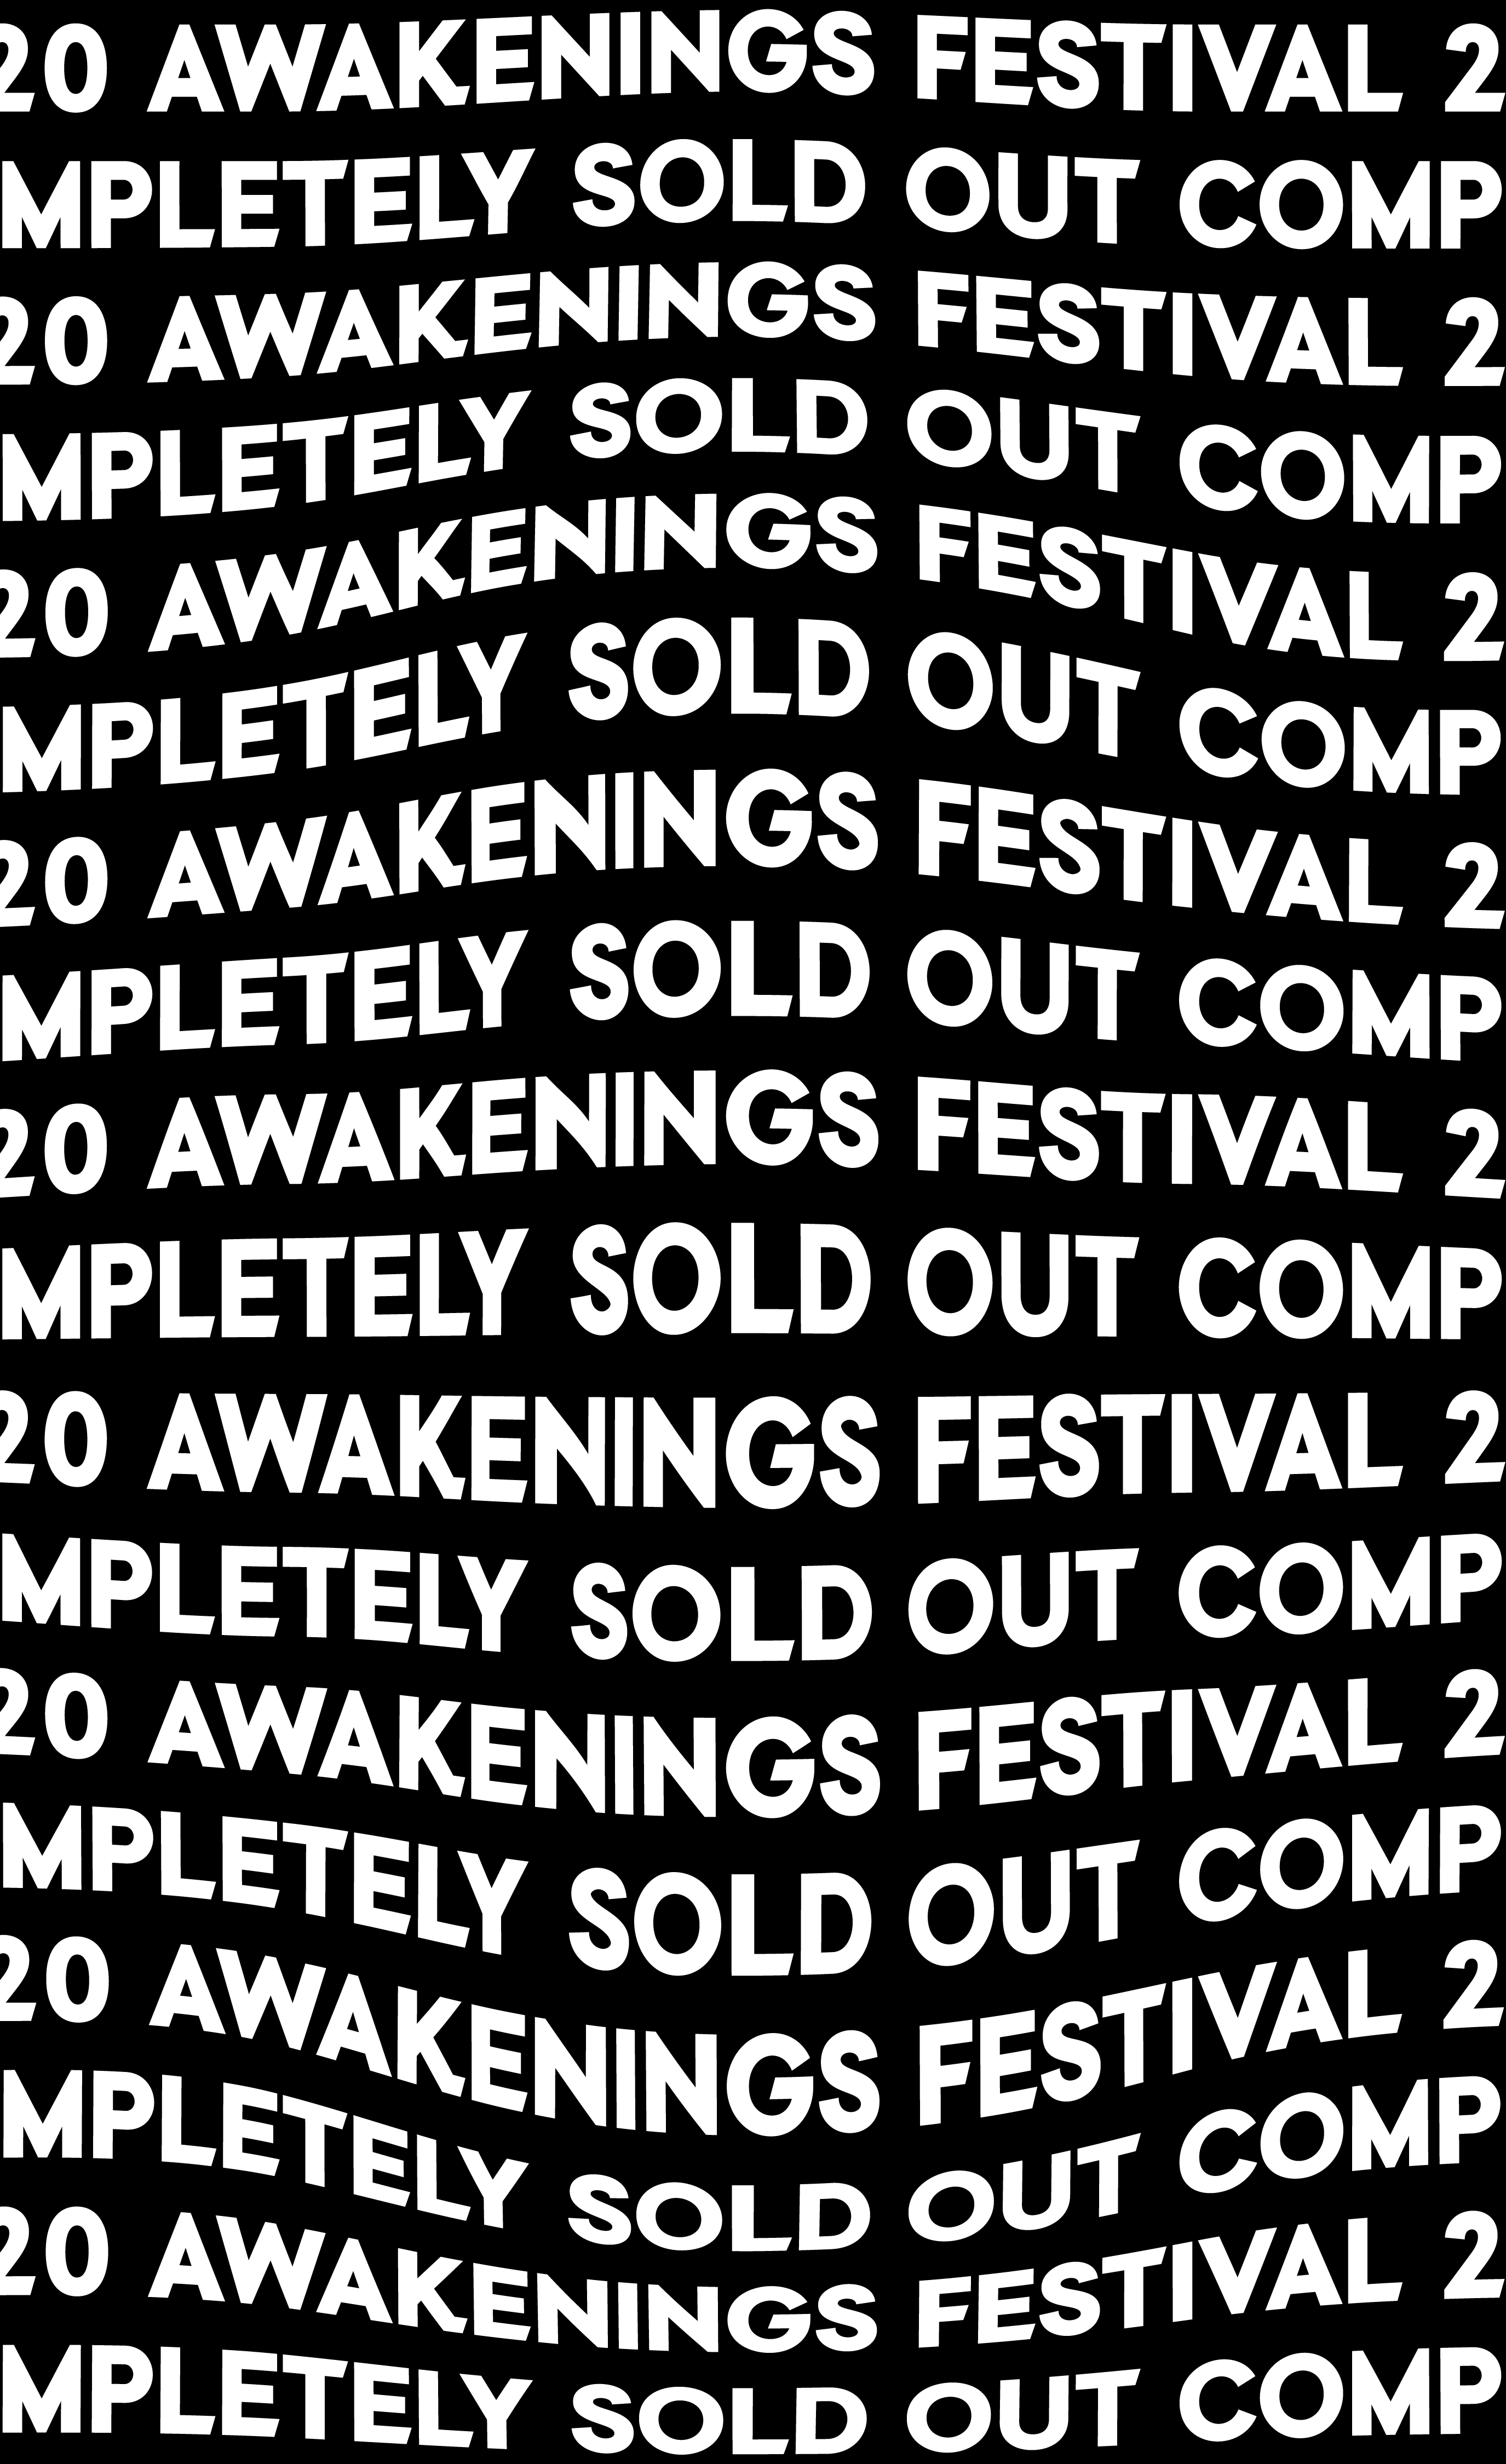 Awakenings Artwork festival’20